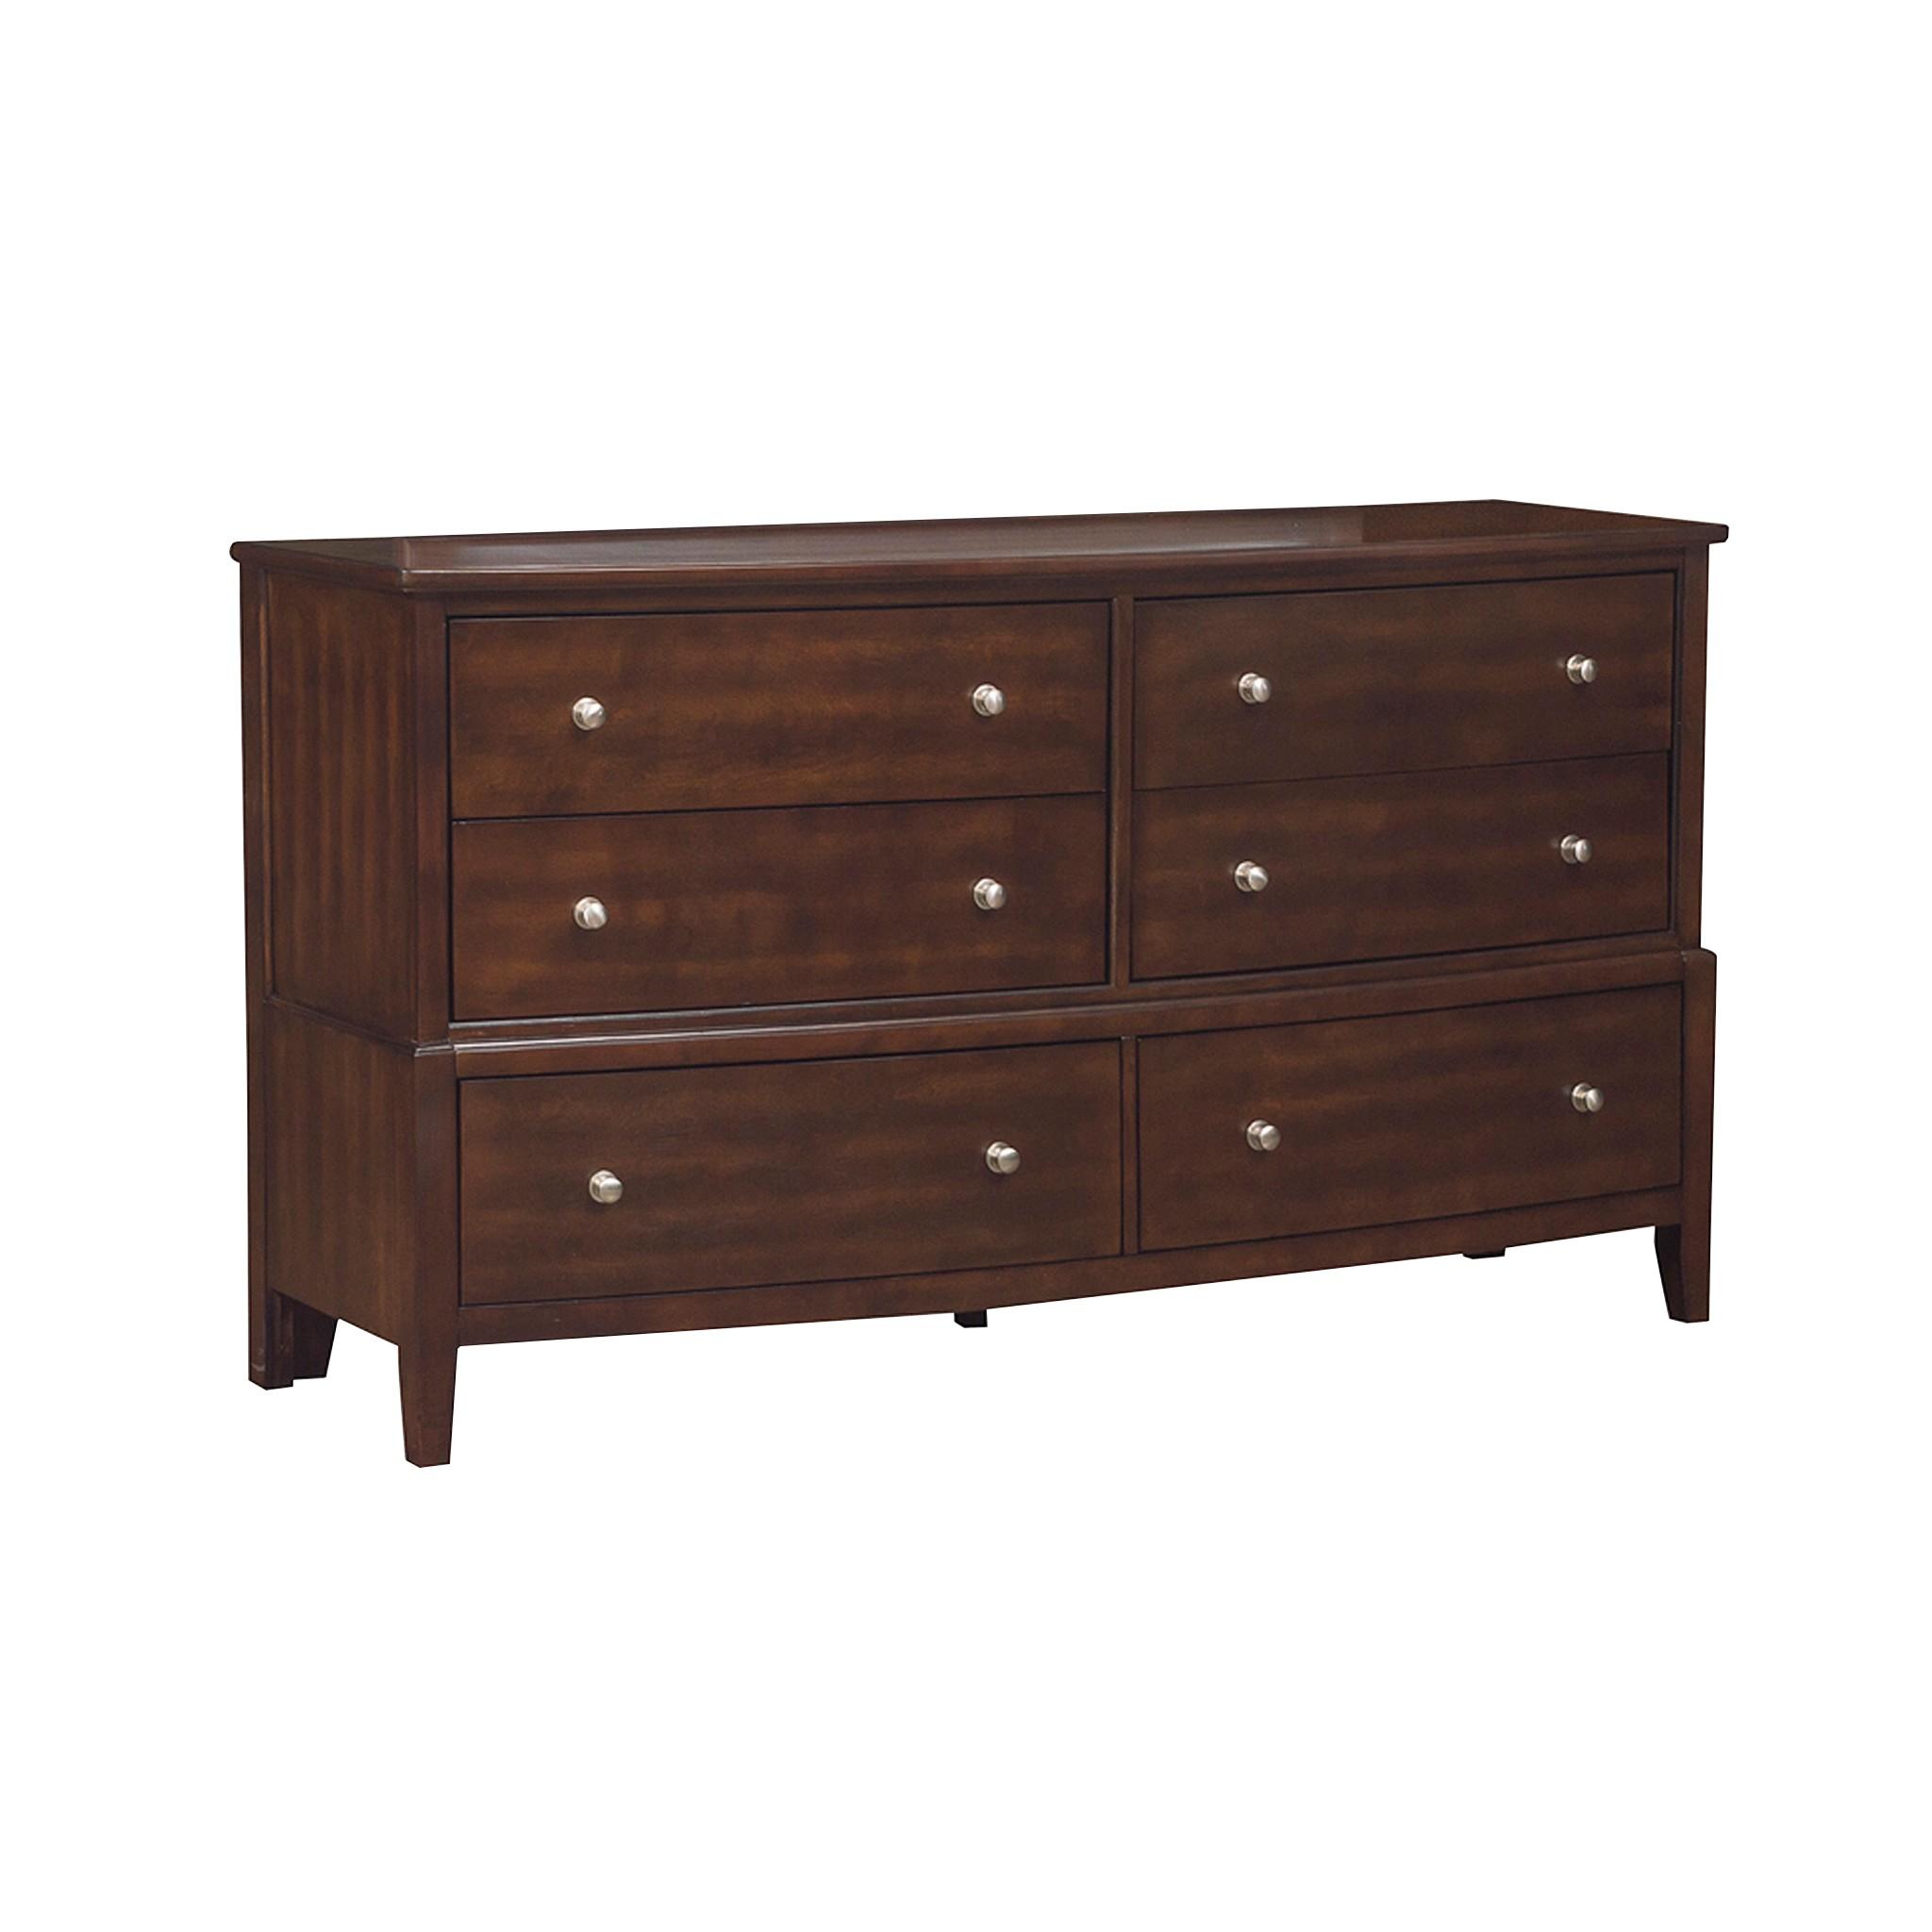 Transitional Dresser 1730-5 Cotterill 1730-5 in Dark Cherry 